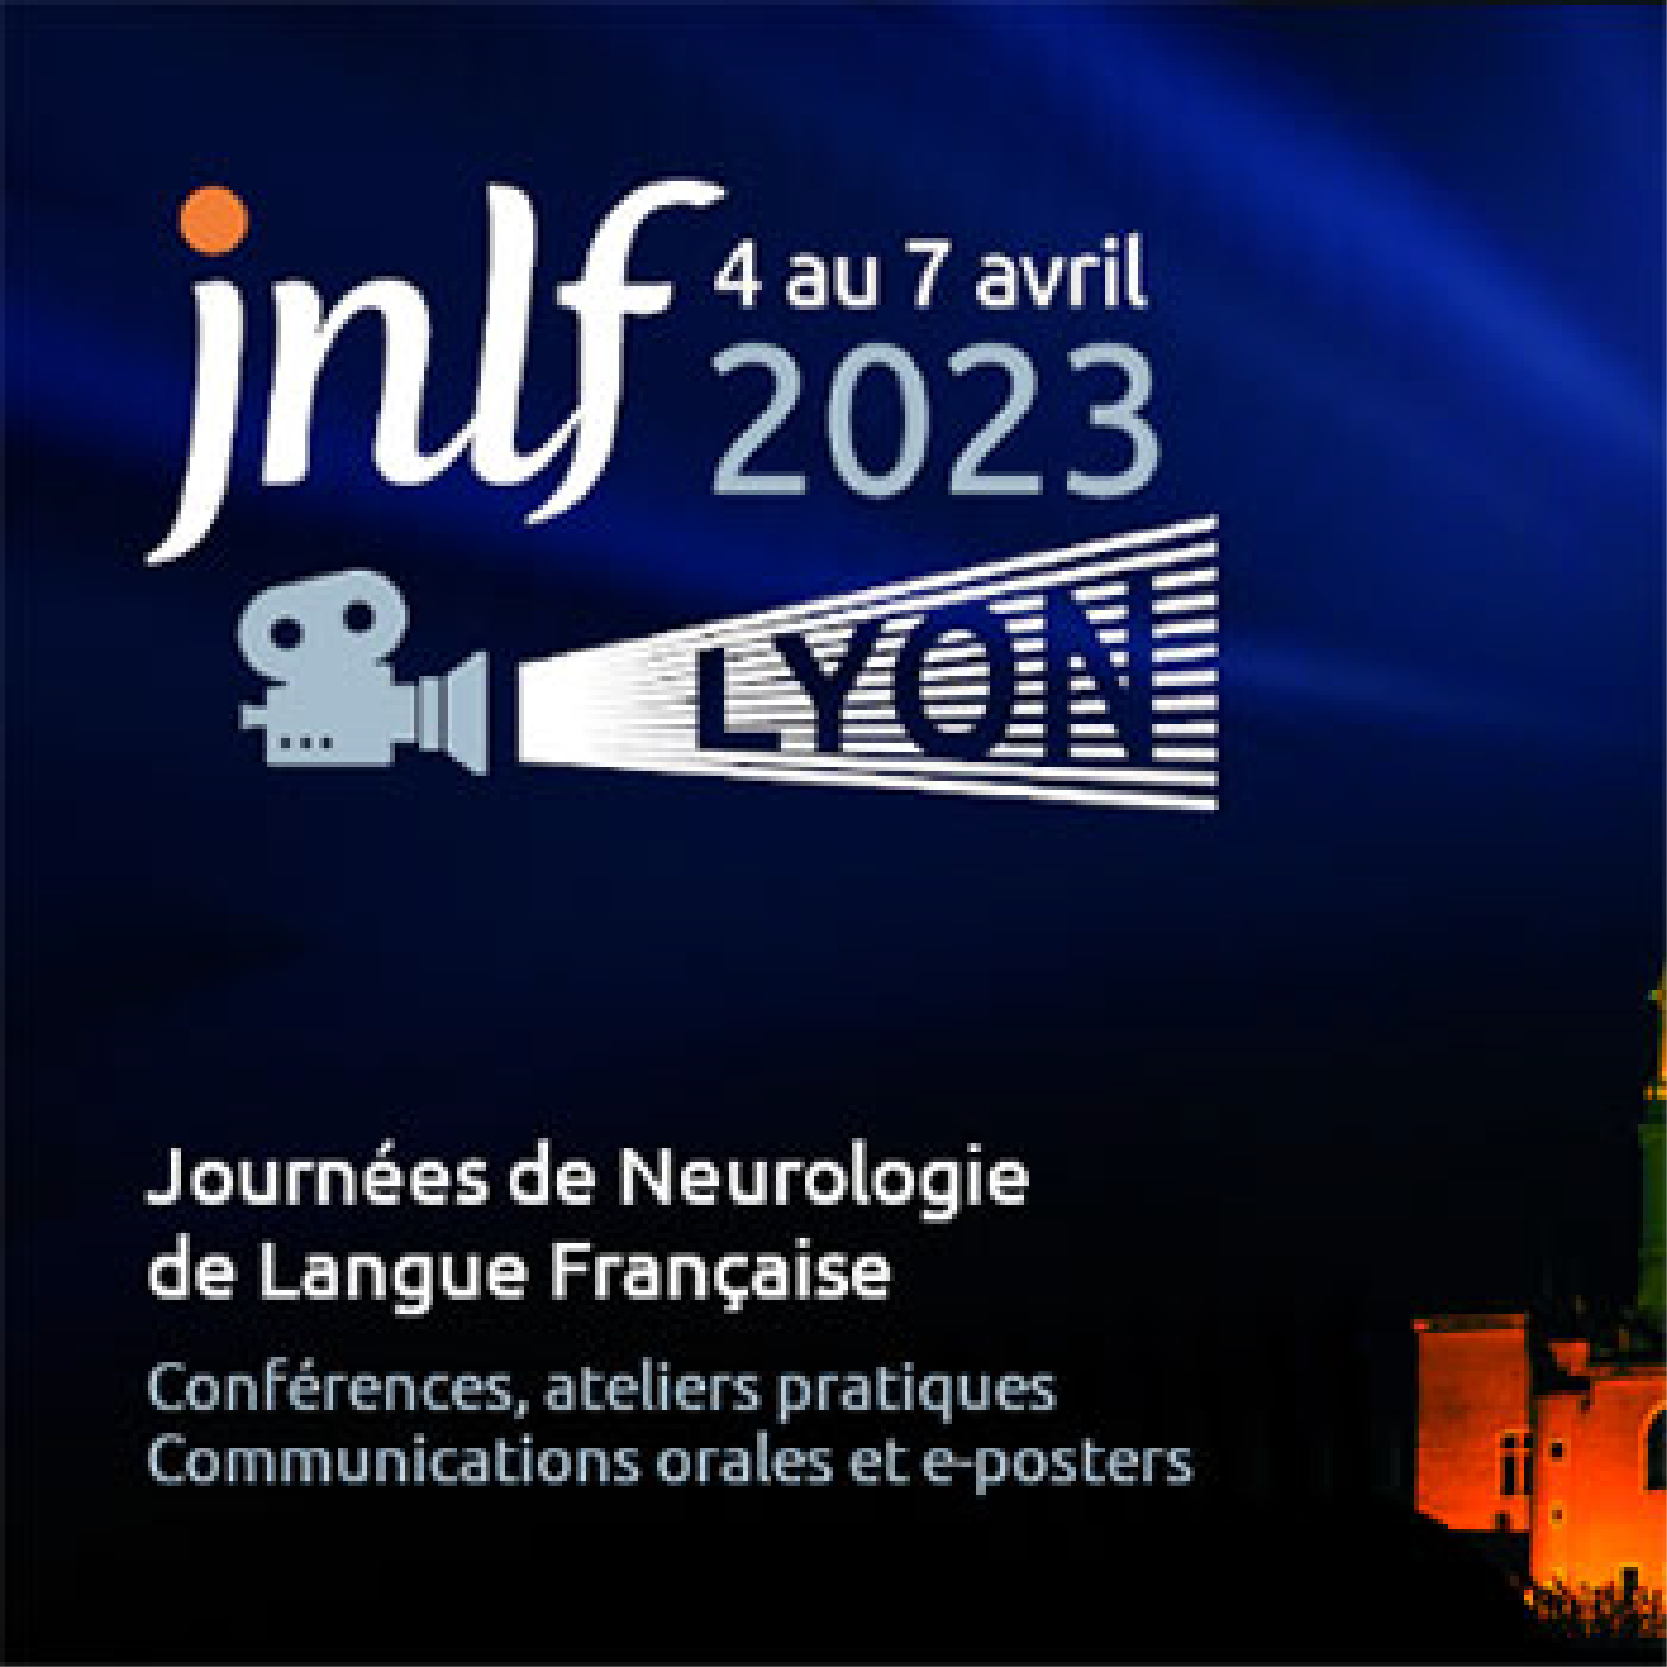 Journées Neurologie de Langue Française - JNLF 2023